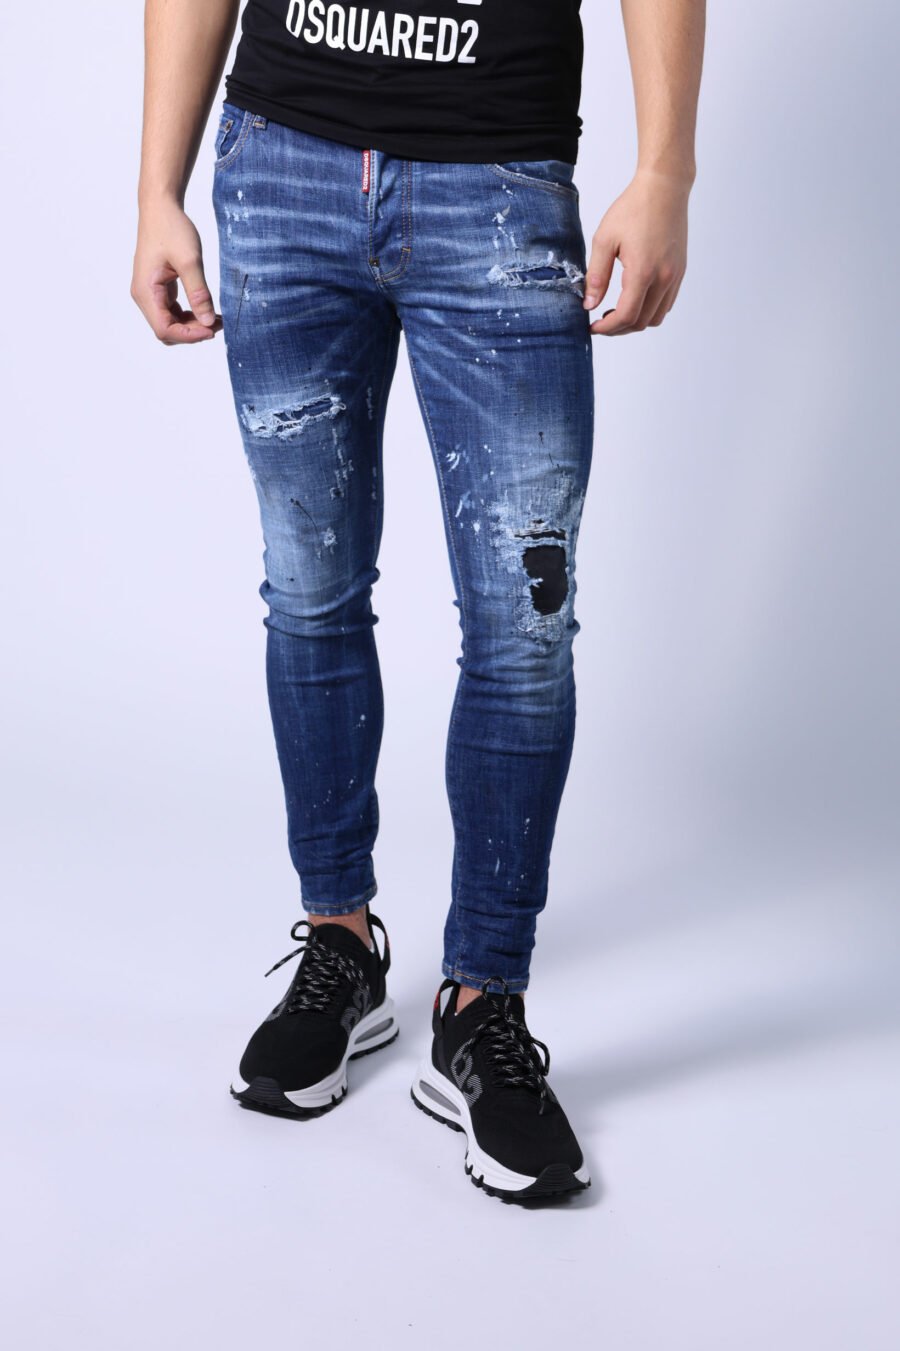 Jeans "super twinkey jean" blau getragen mit schwarz gerissen - Untitled Catalog 05288